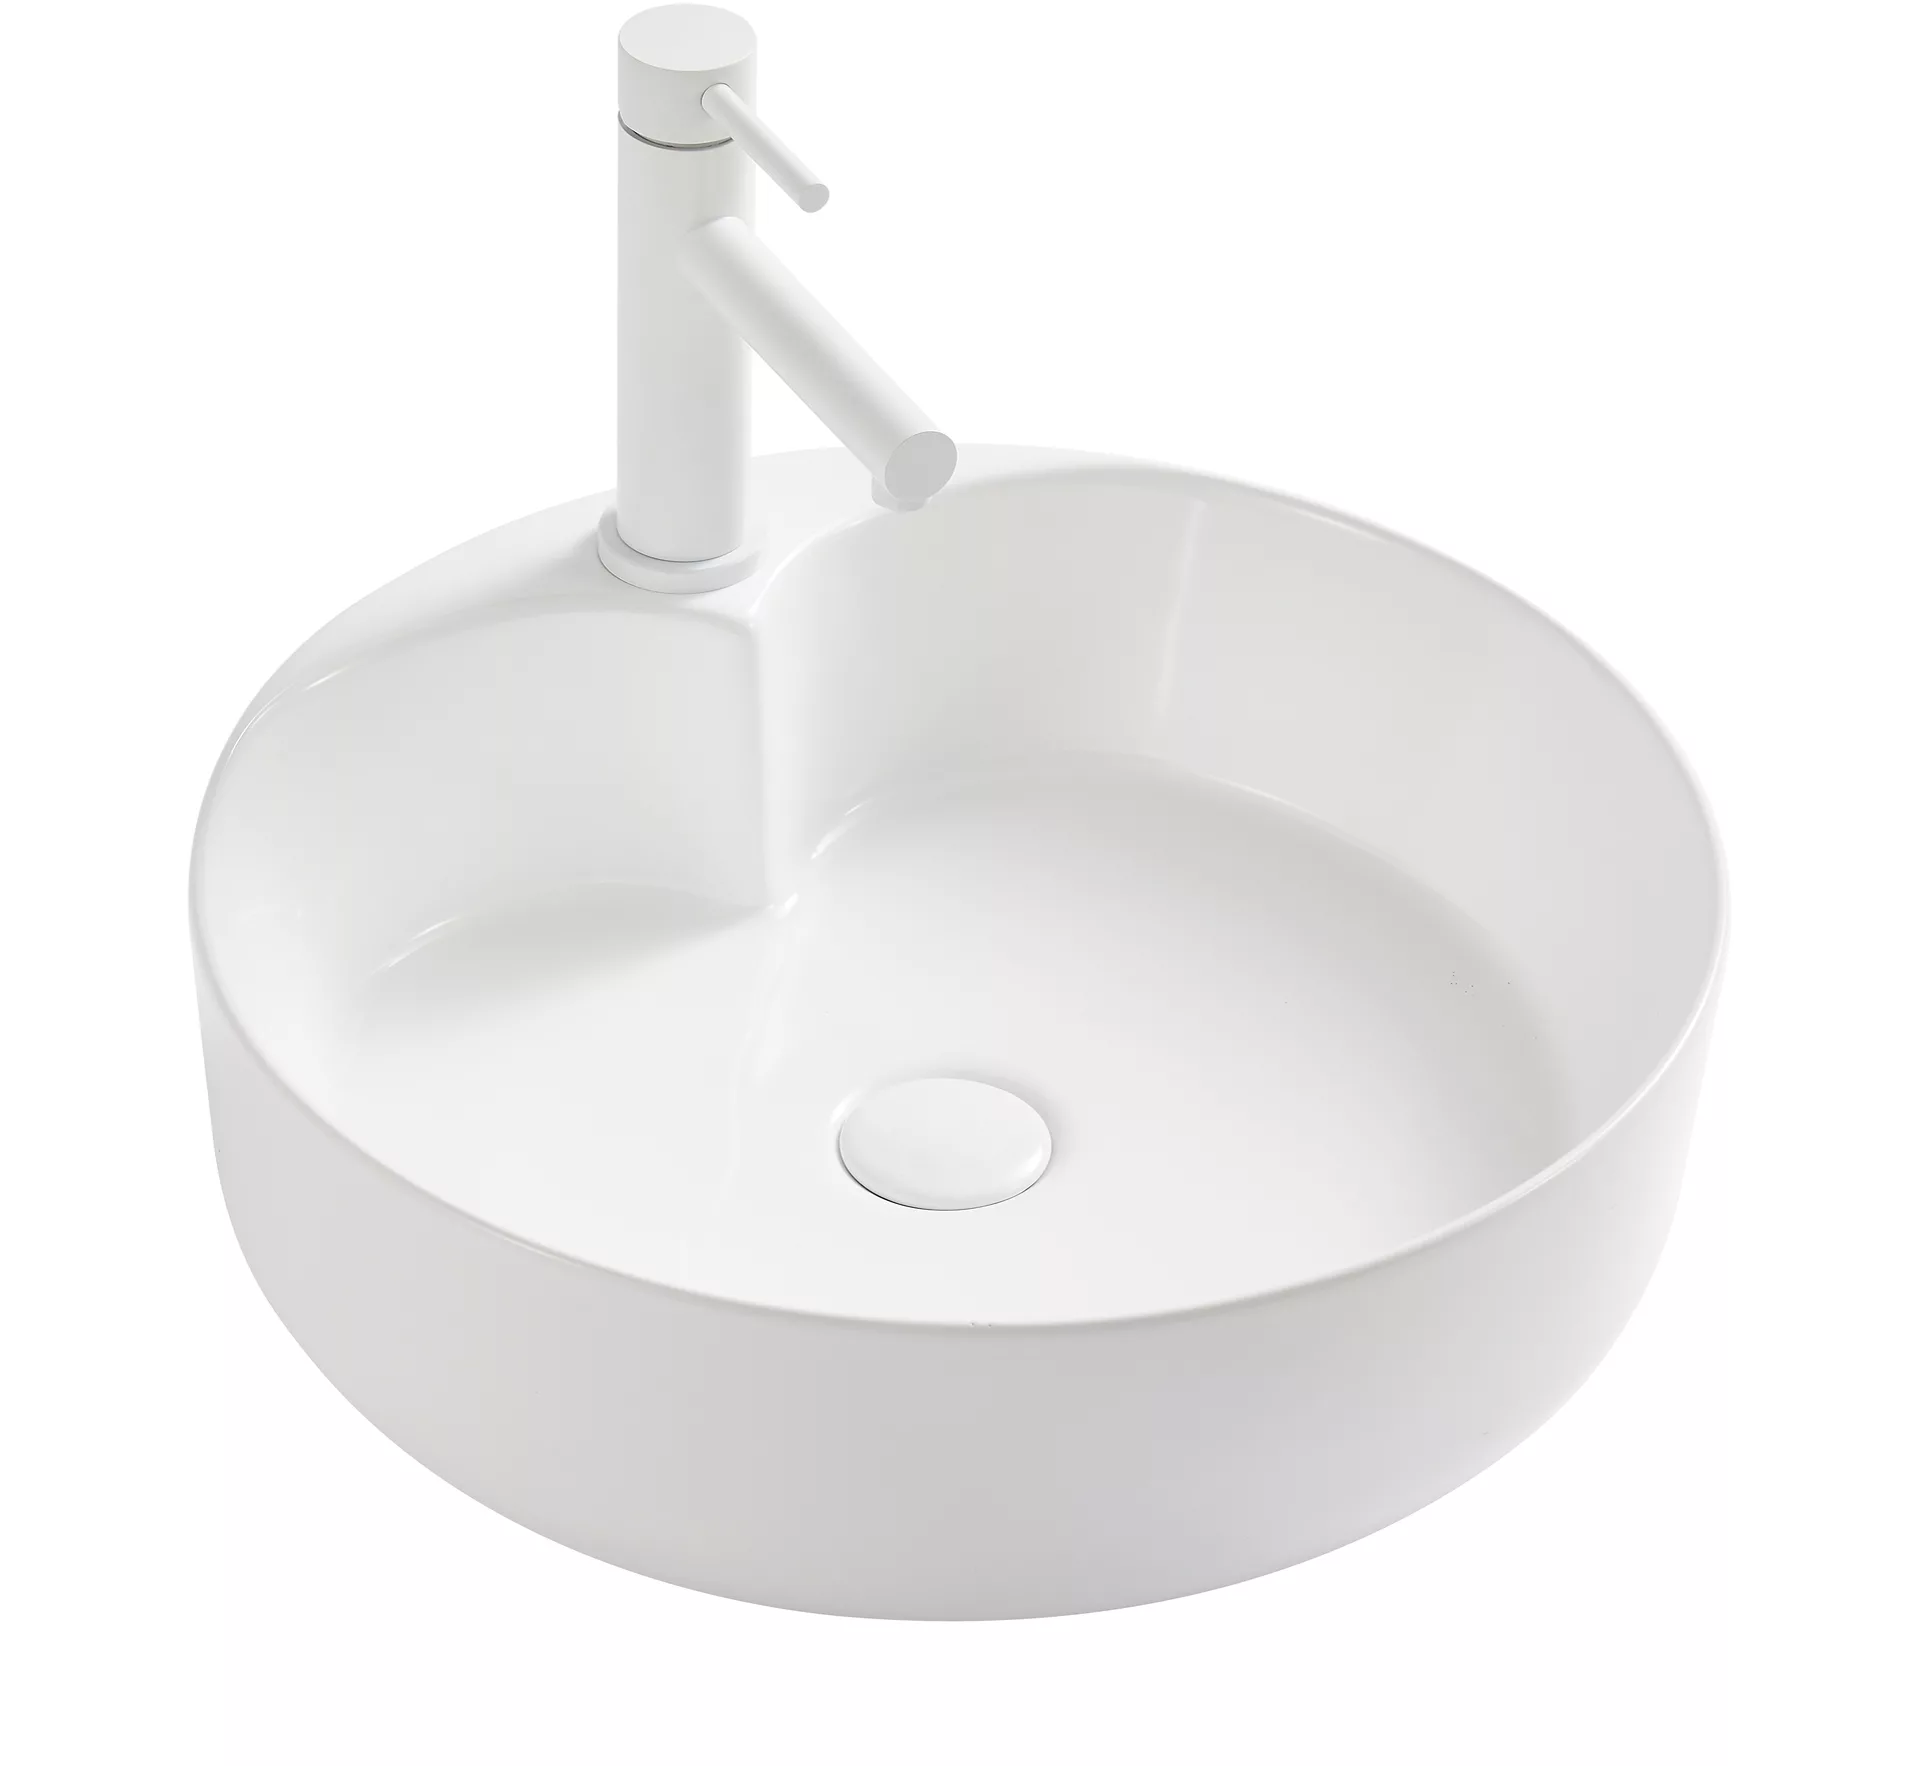 Накладная белая раковина для ванной GiD N9013 круглая керамическая керамическая вставка ceracasa